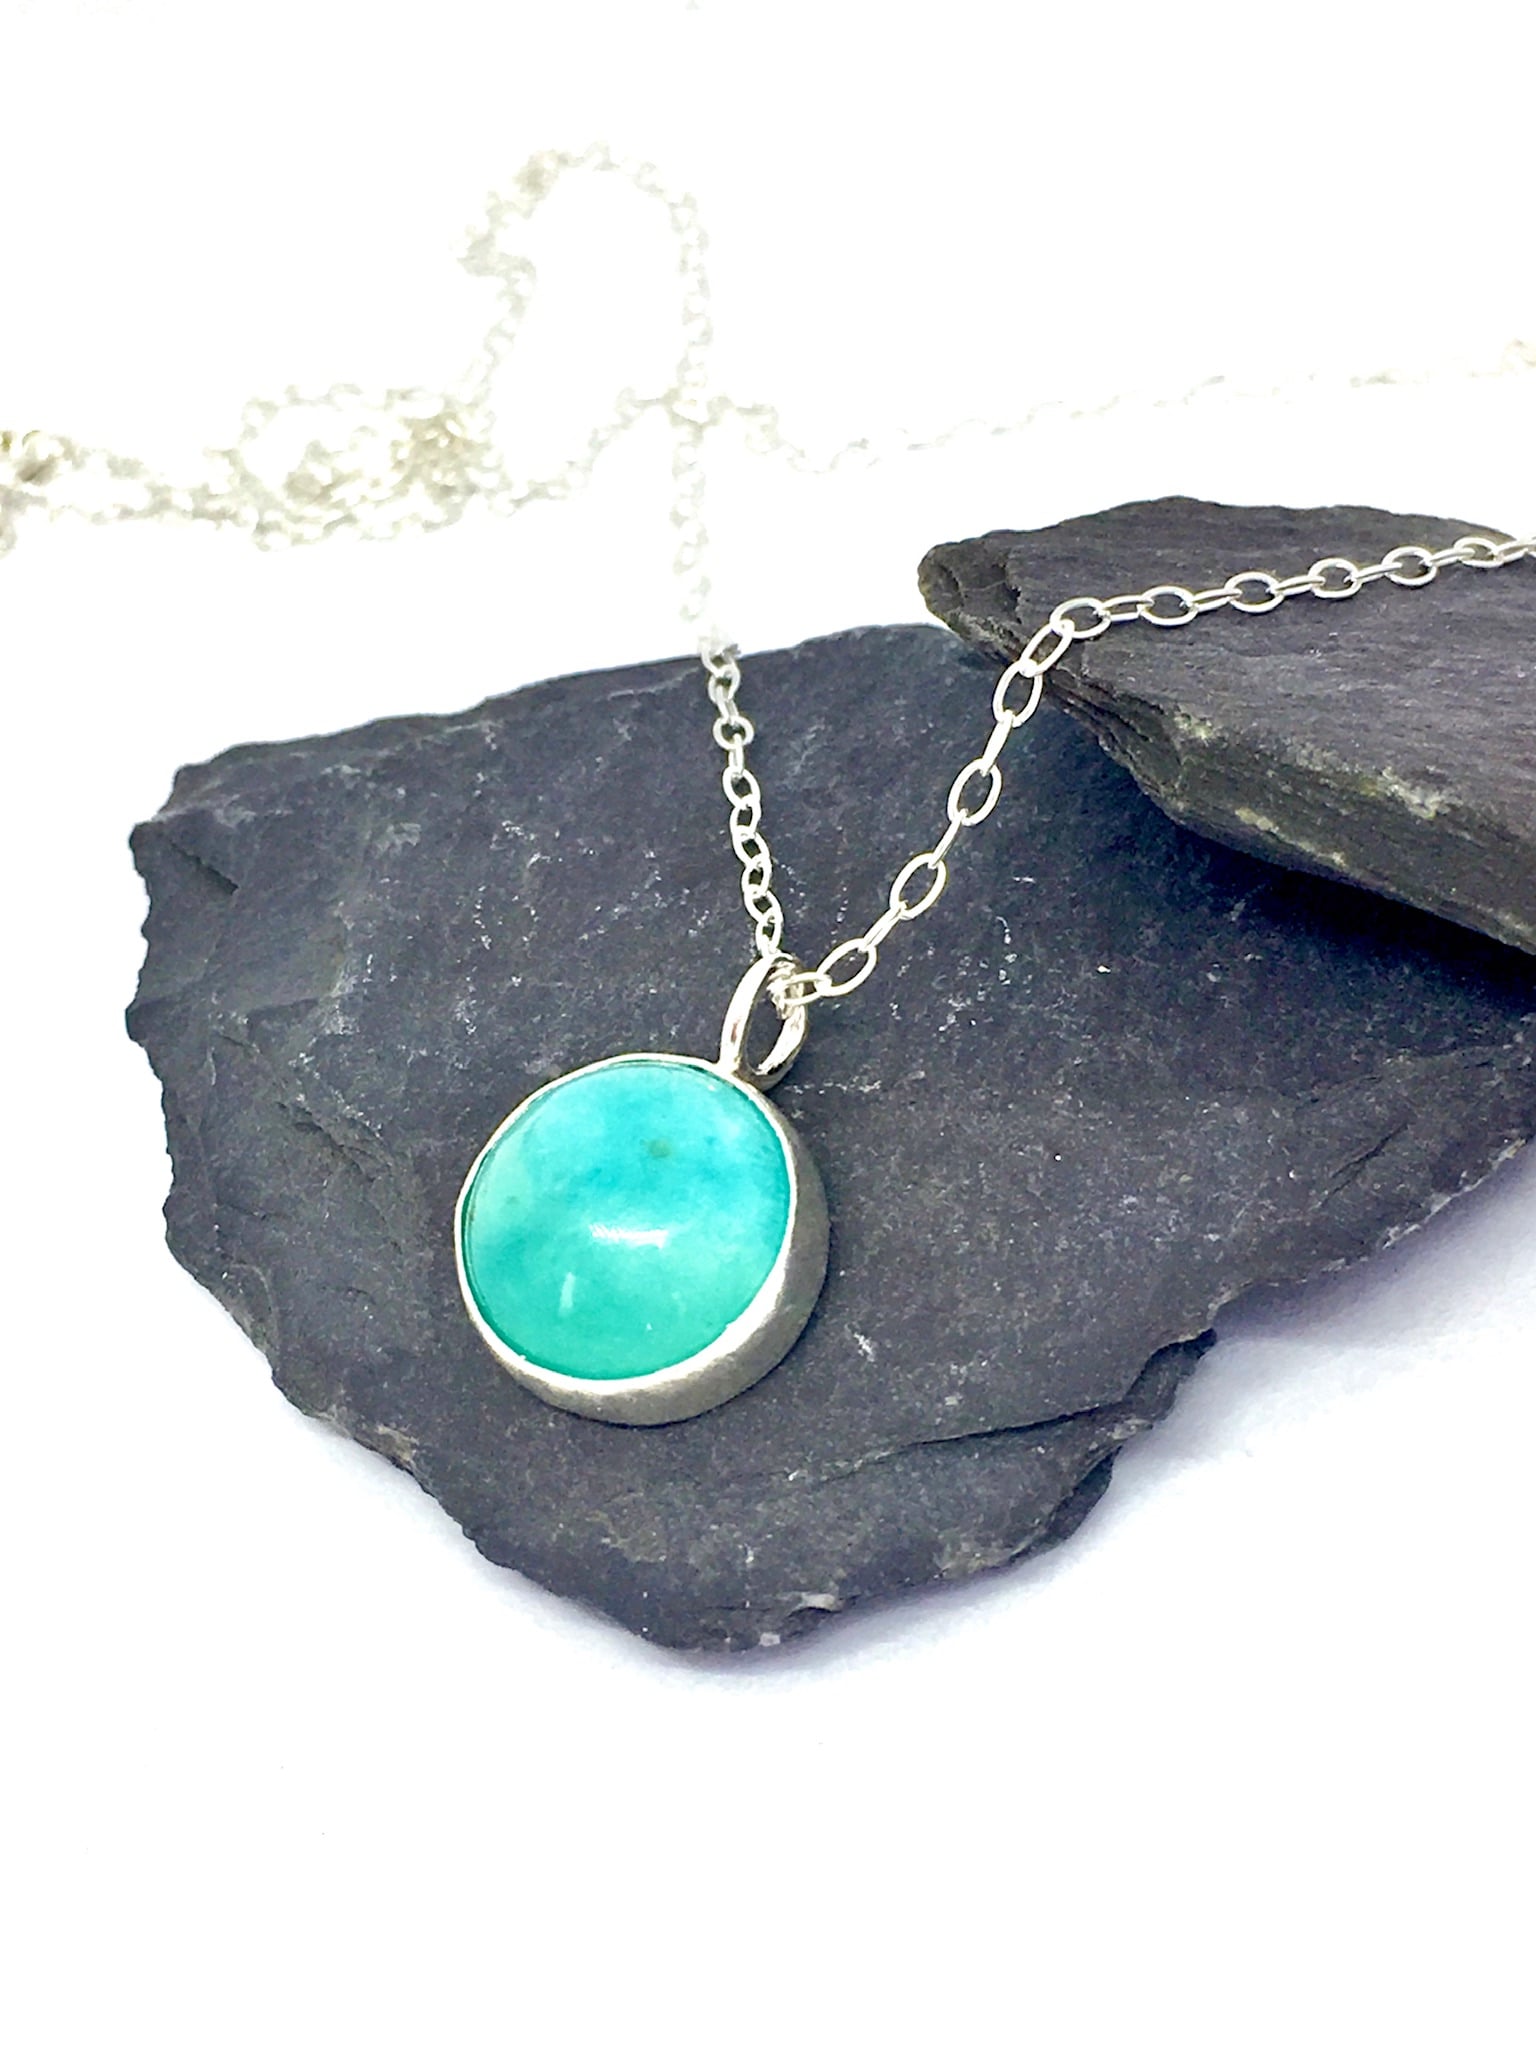 Amazonite pendant, turquoise colour jewellery